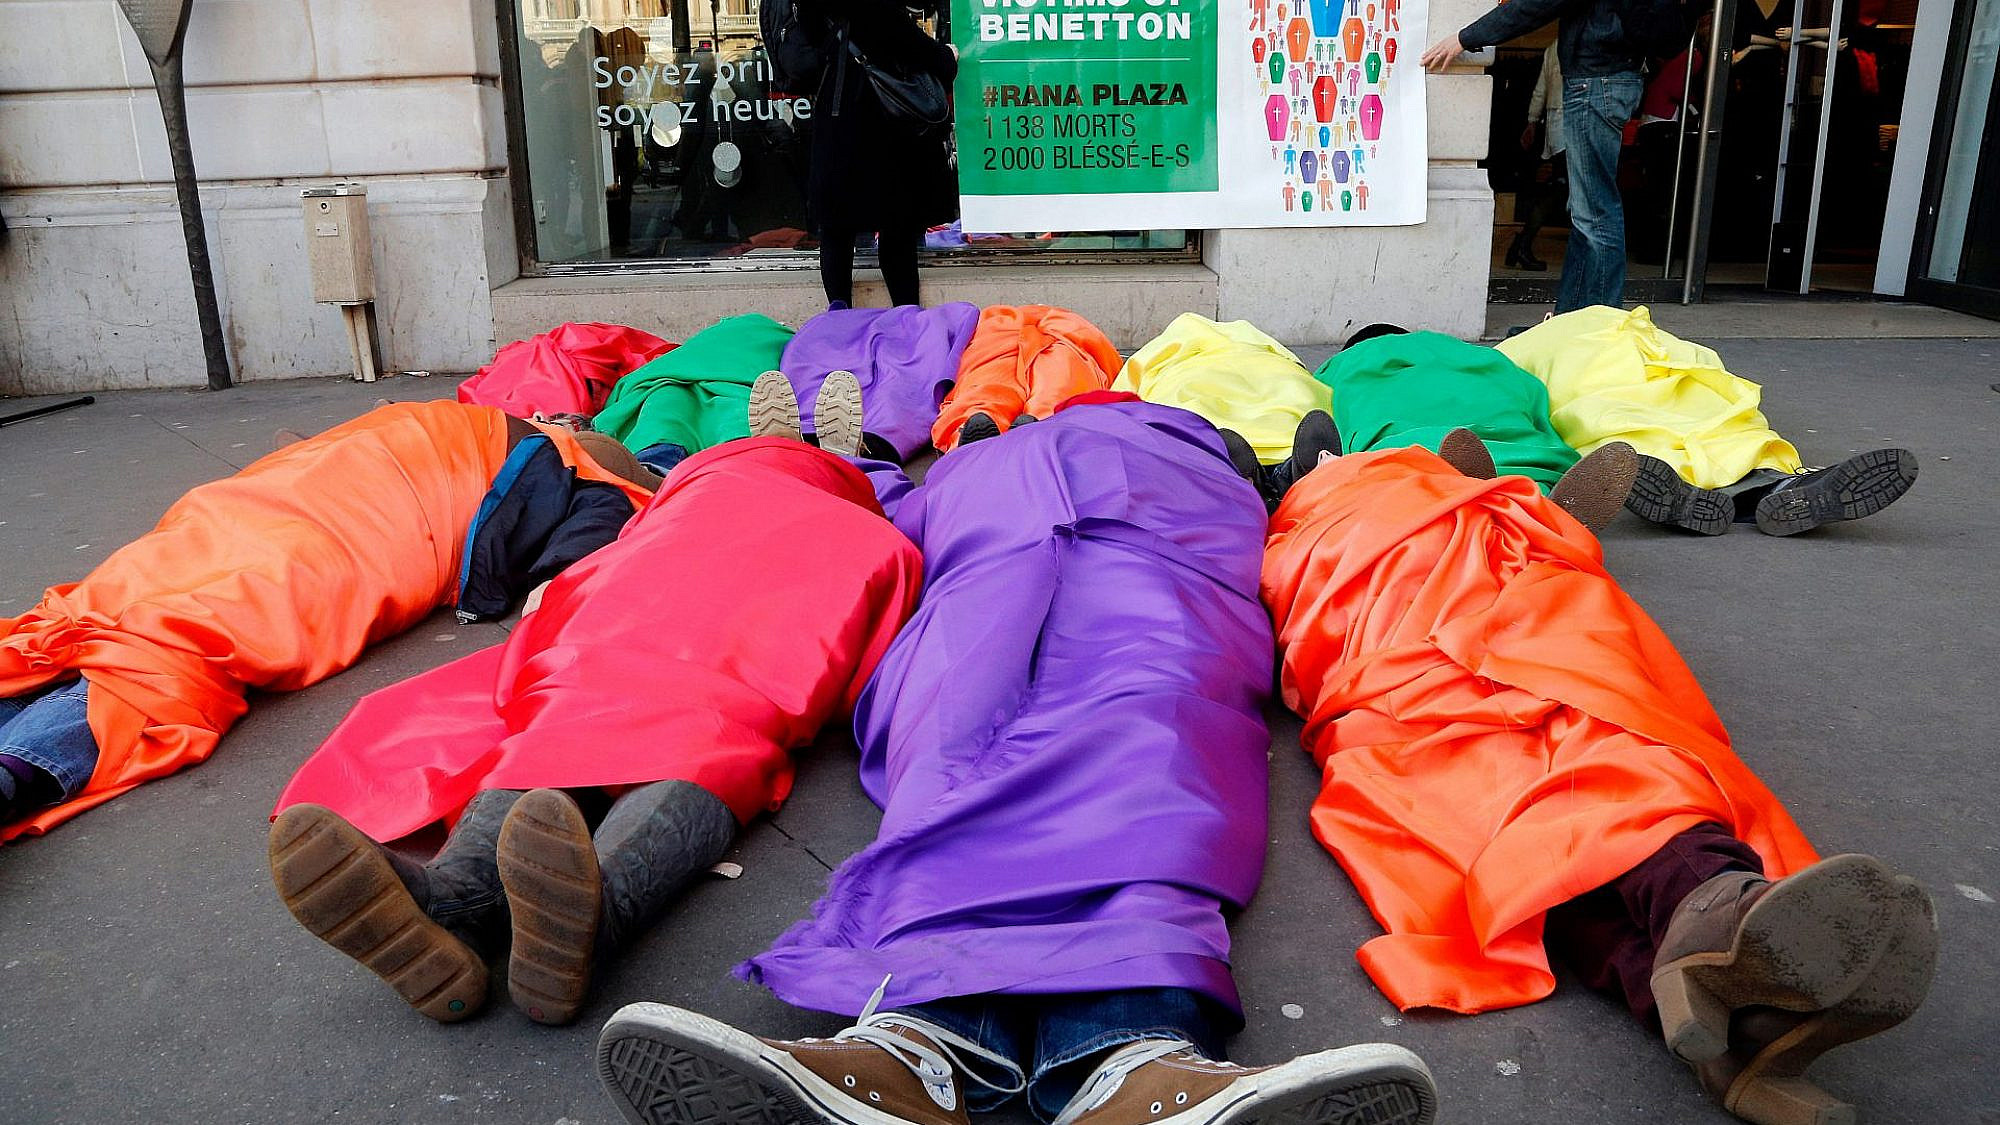 תעשיית האופנה הורגת את כולנו. הפגנה בפריז נגד בנטון בעקבות אסון "רנה פלאזה" (צילום: פרנסואה גיו\AFP\גטי אימג'ס)